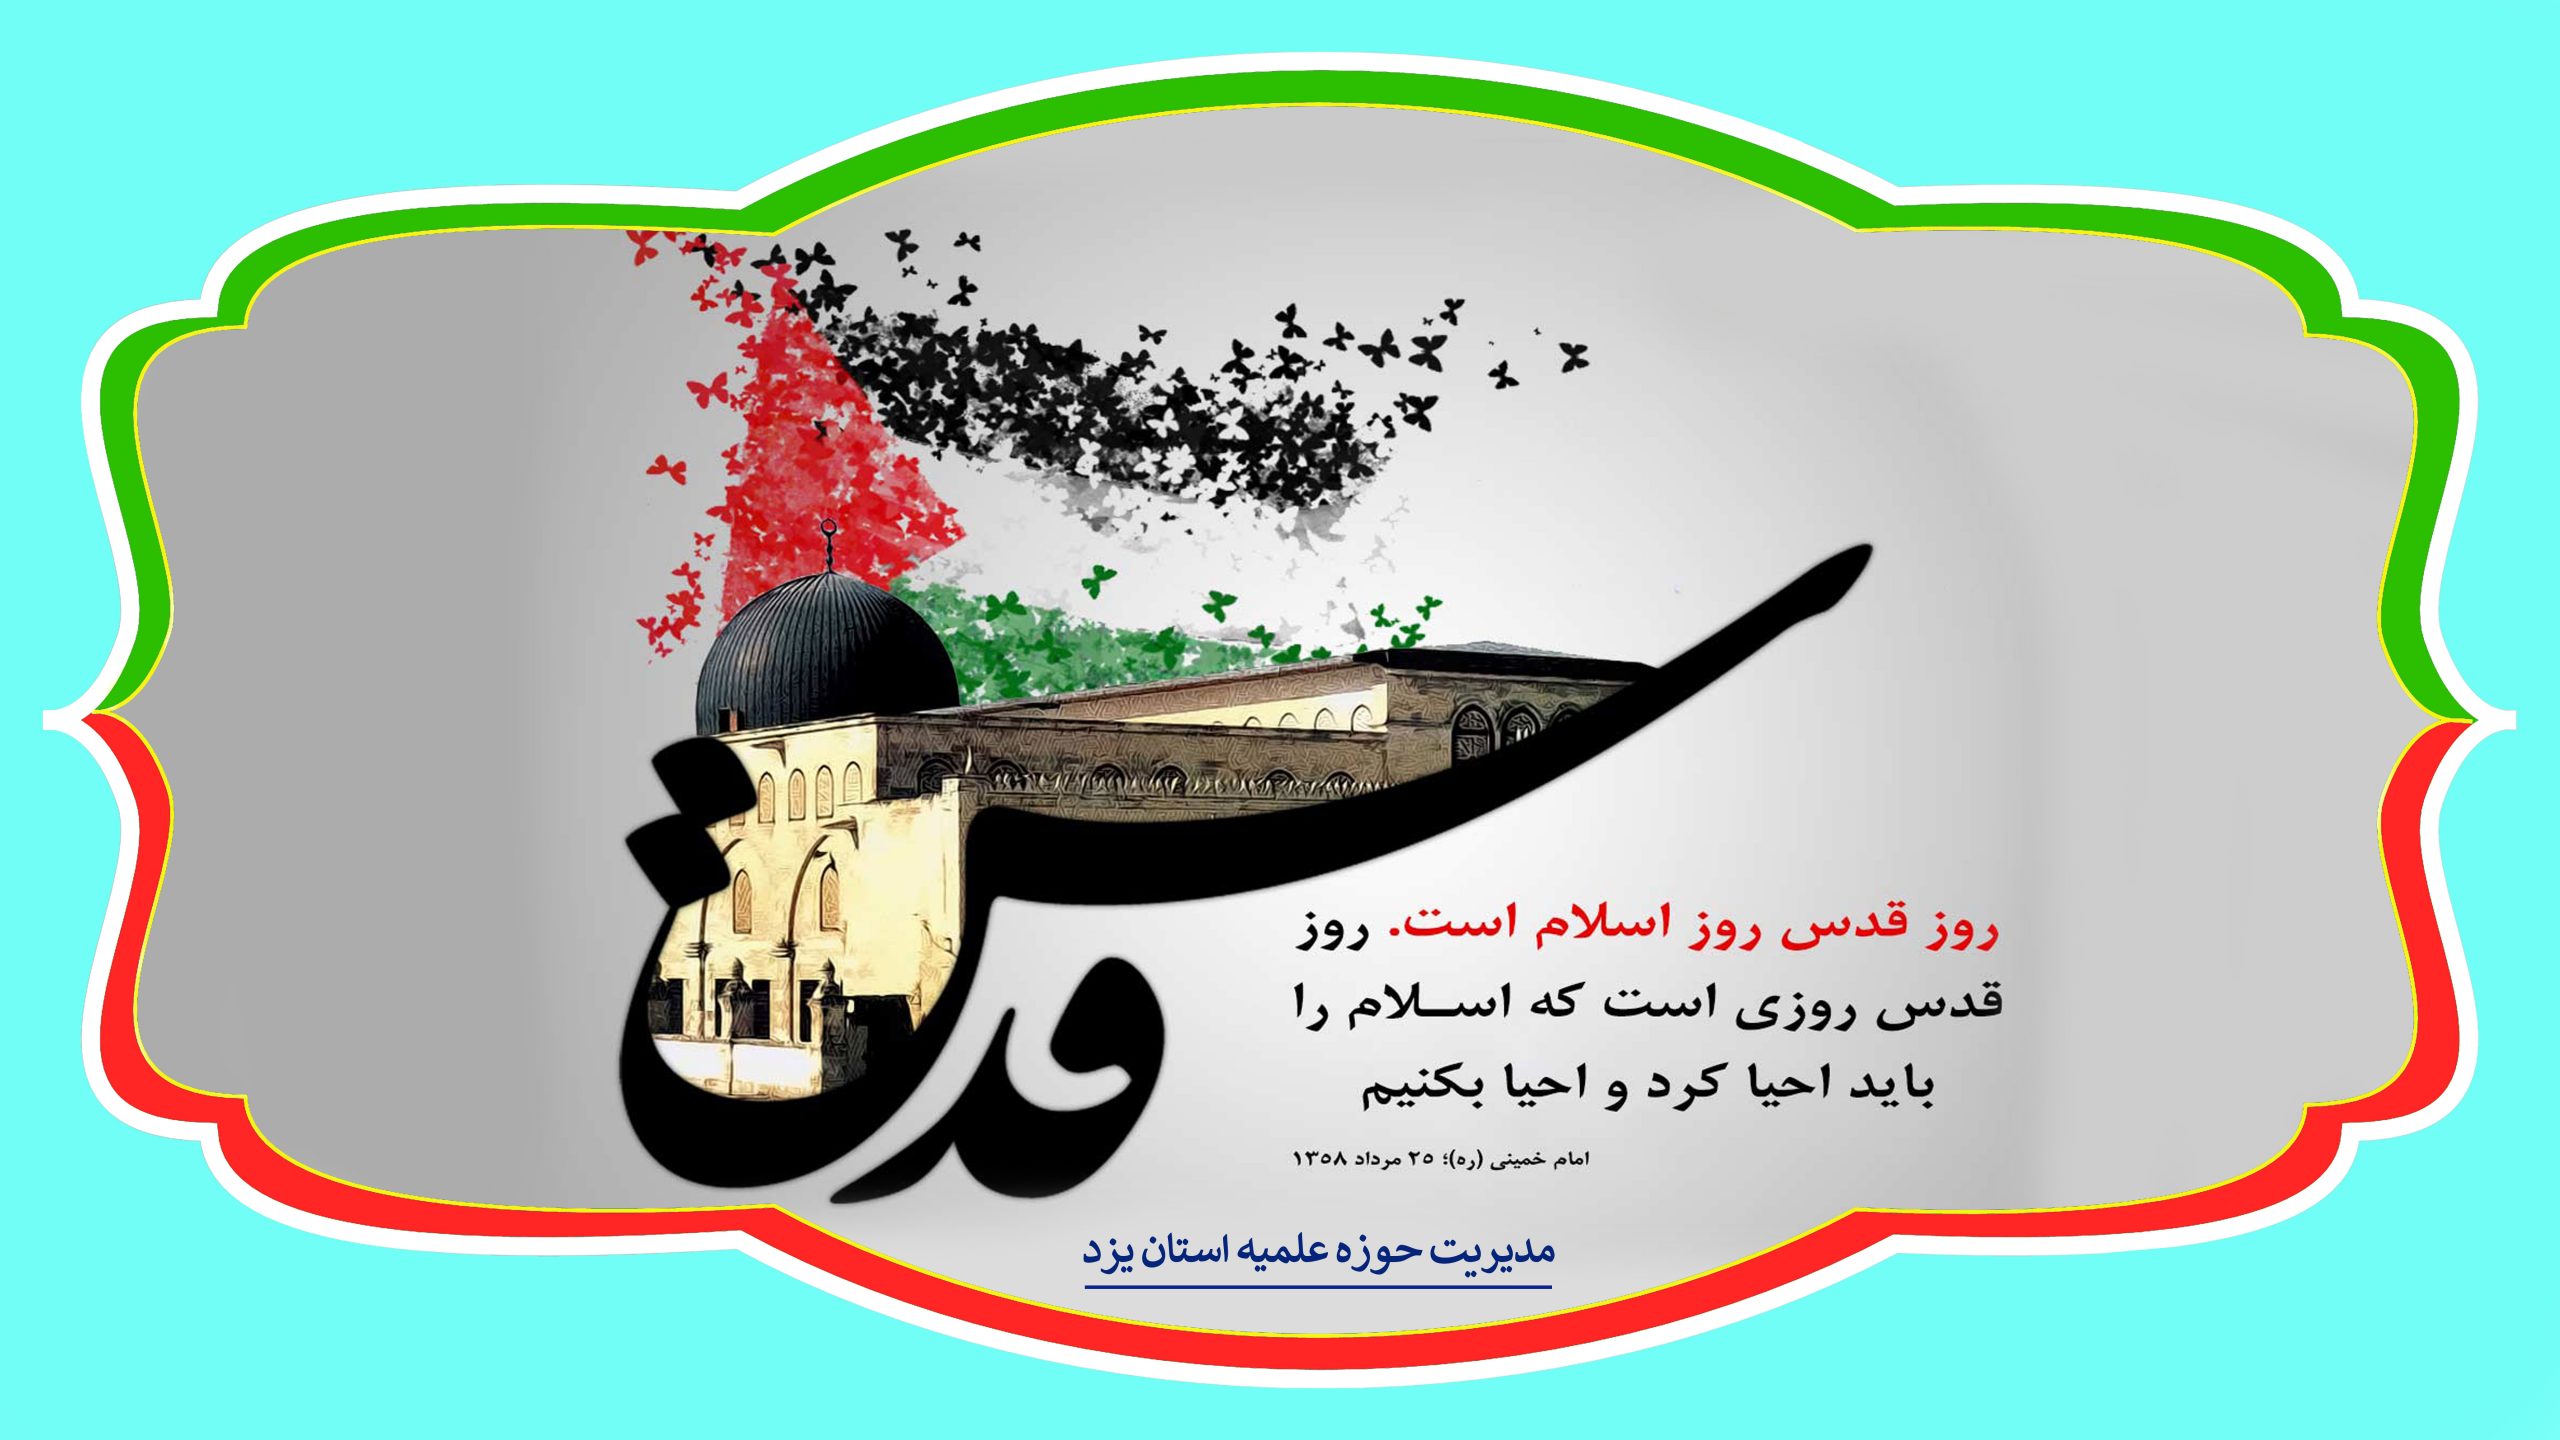 واحد رسانه حوزه علمیه استان یزد، اقدام به تهیه پوسترهایی با موضوع قدس برای نشر در فضای مجازی کرد.